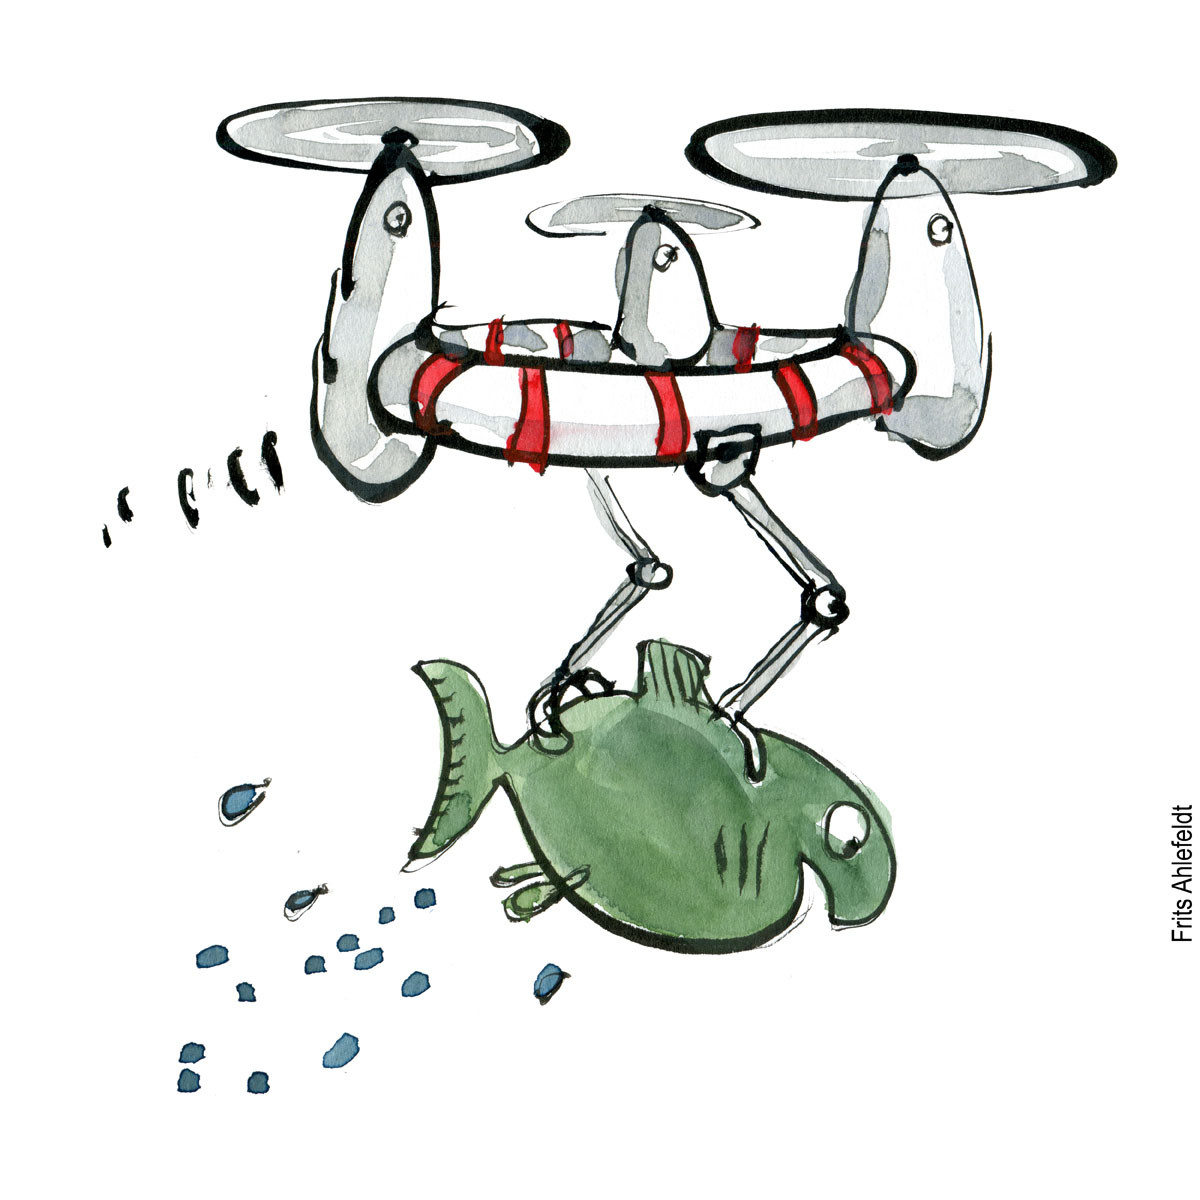 Tegning af drone som løfter en fisk. Biodiversitet illustration af Frits Ahlefeldt